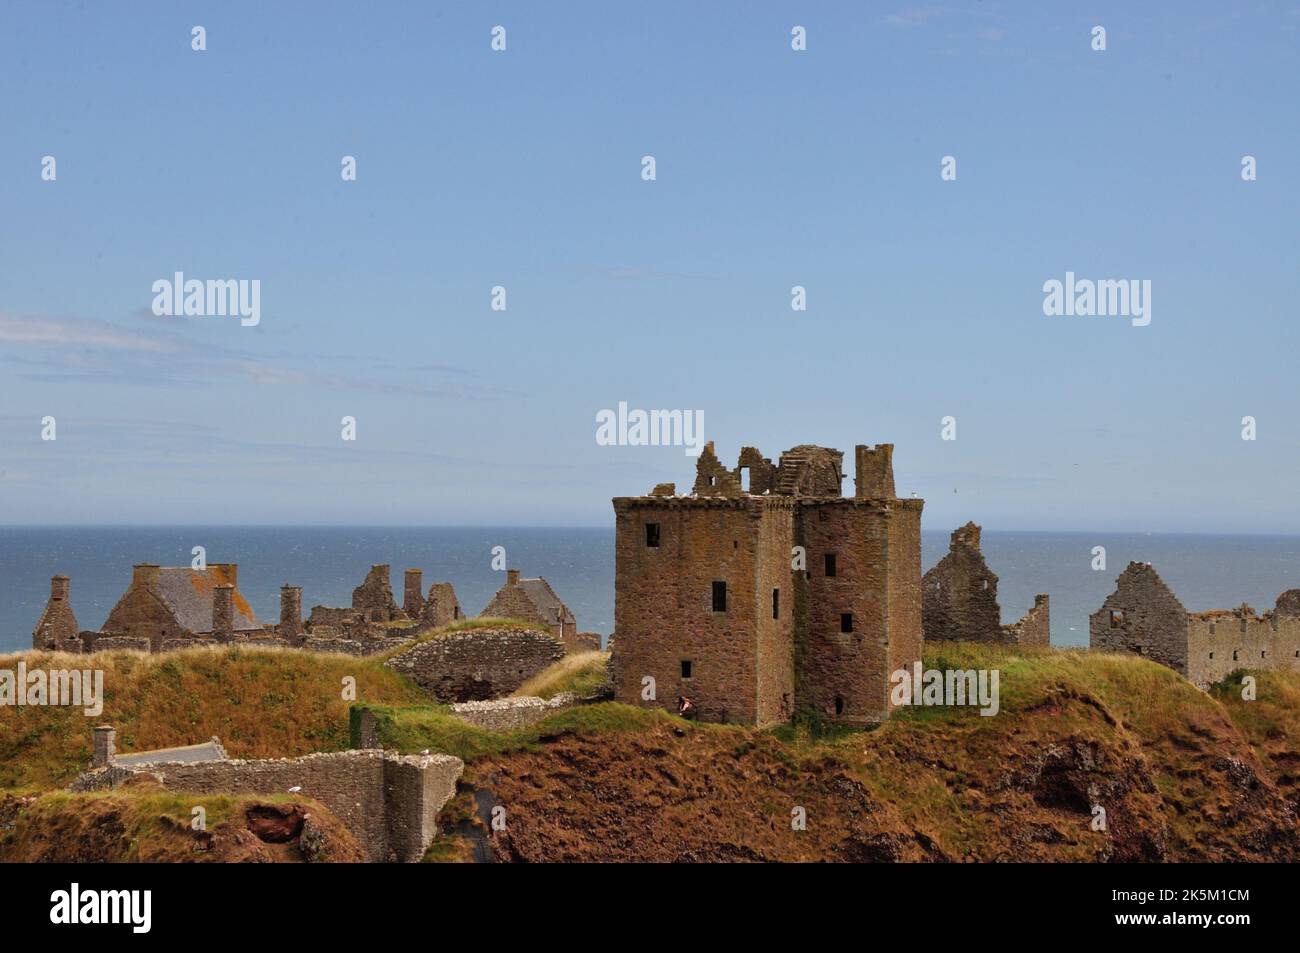 Die Ruine von Dunnottar Castle bei Stonehaven an der schottischen Ostküste liegt nicht nur malerisch direkt am Meer auf schroffen Felsen. Sie ist auch Foto Stock